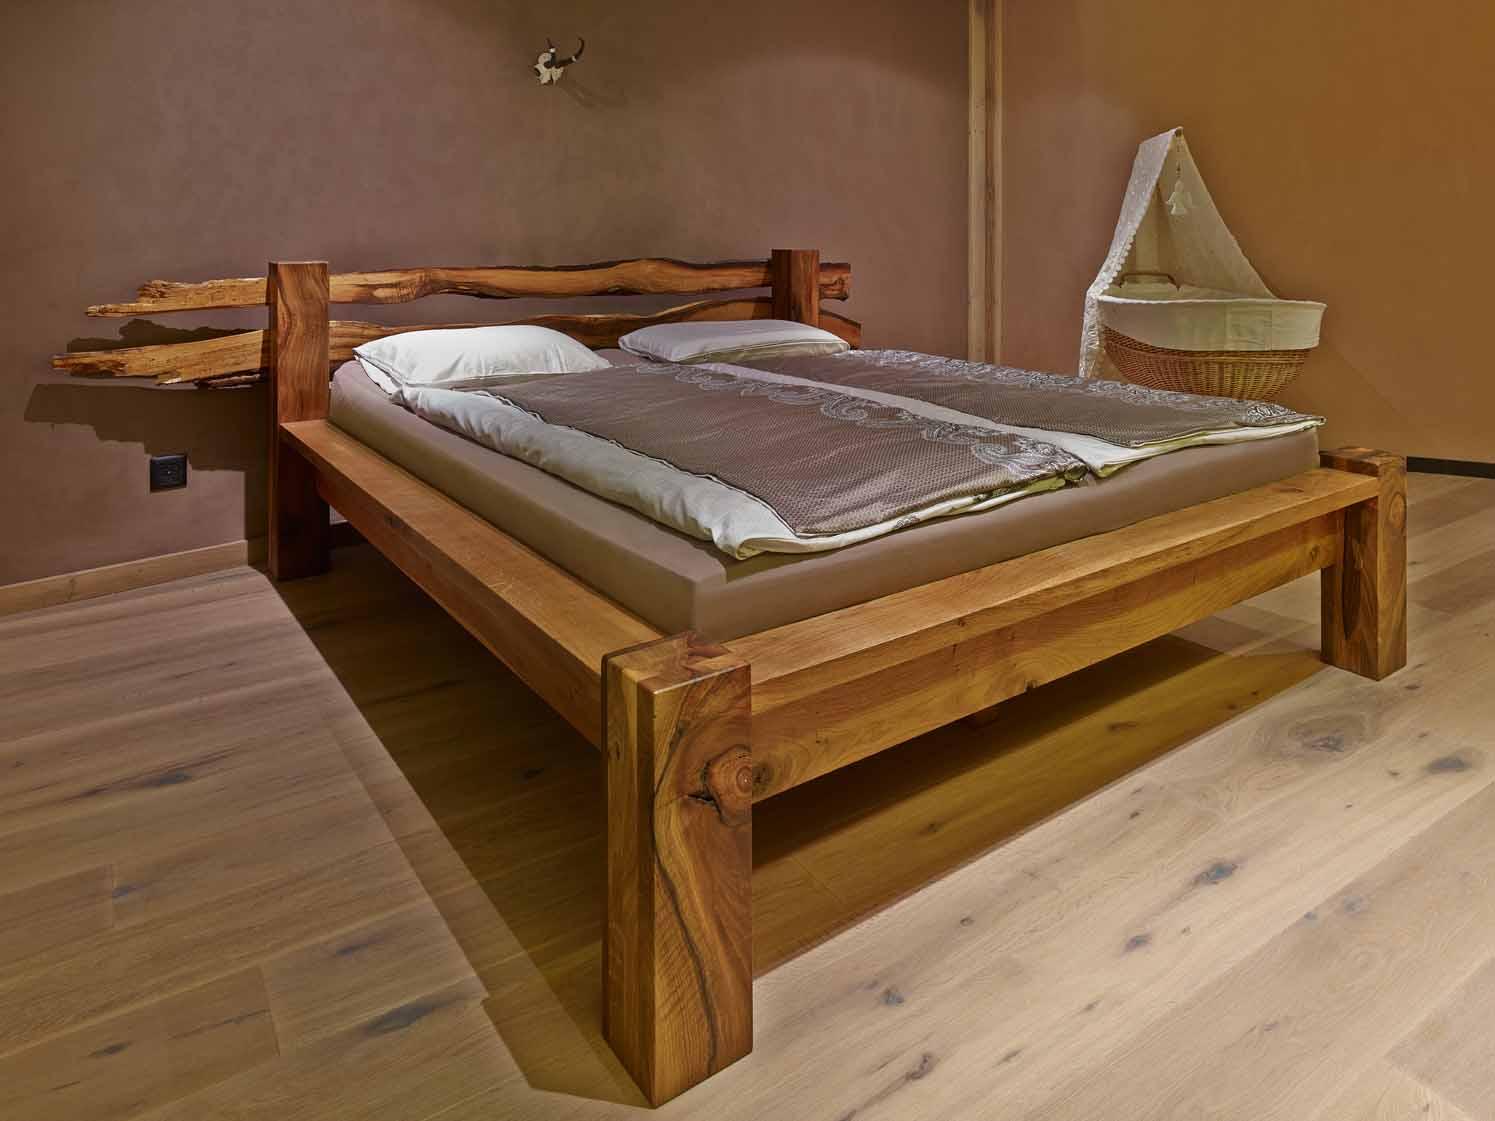 Architektur-Reportage Herbligen Riegbau: Selbstgebautes Bett aus Holz